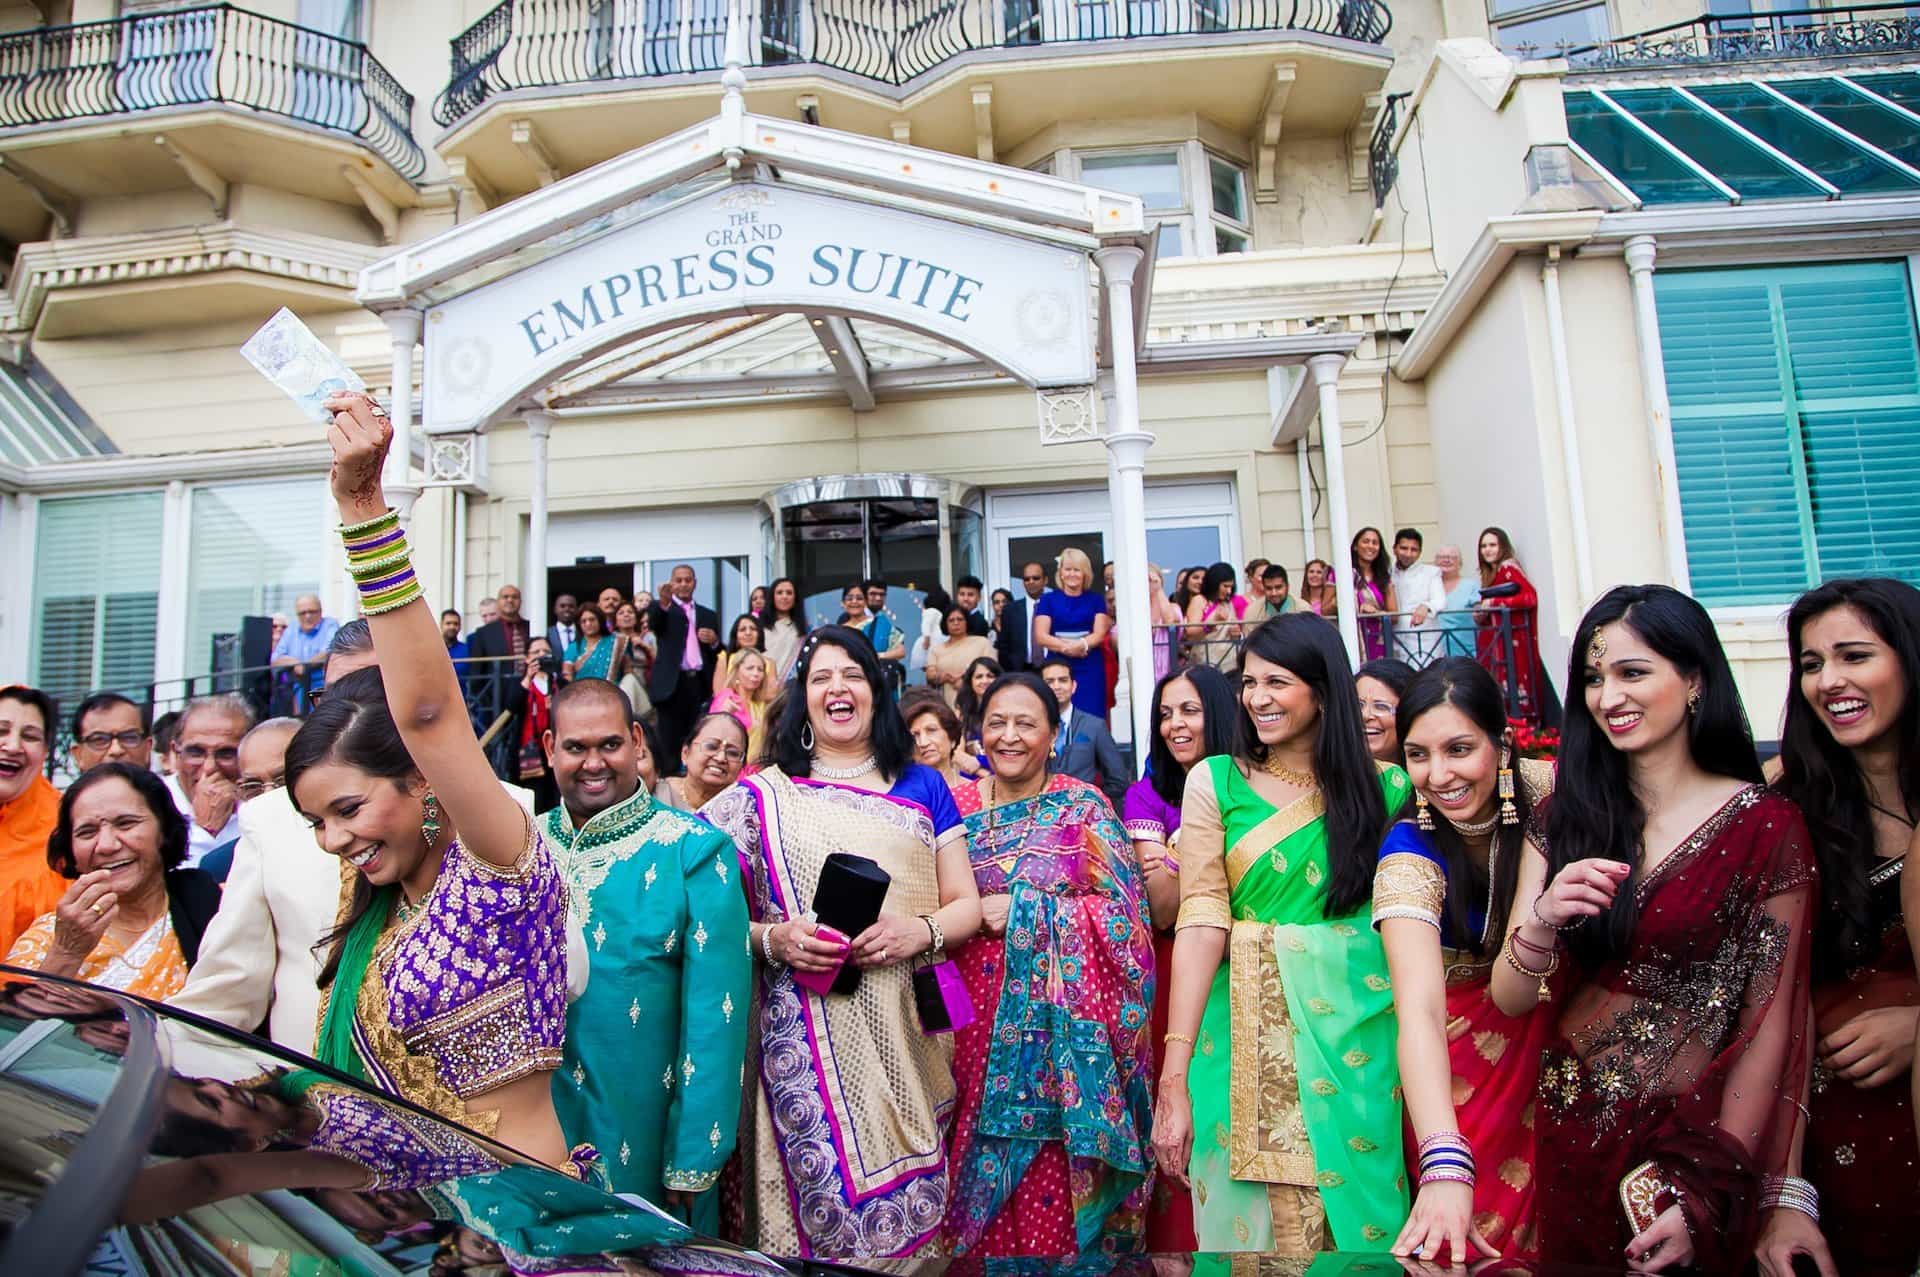 Real Wedding: Vivid and Vibrant at The Grand, Brighton